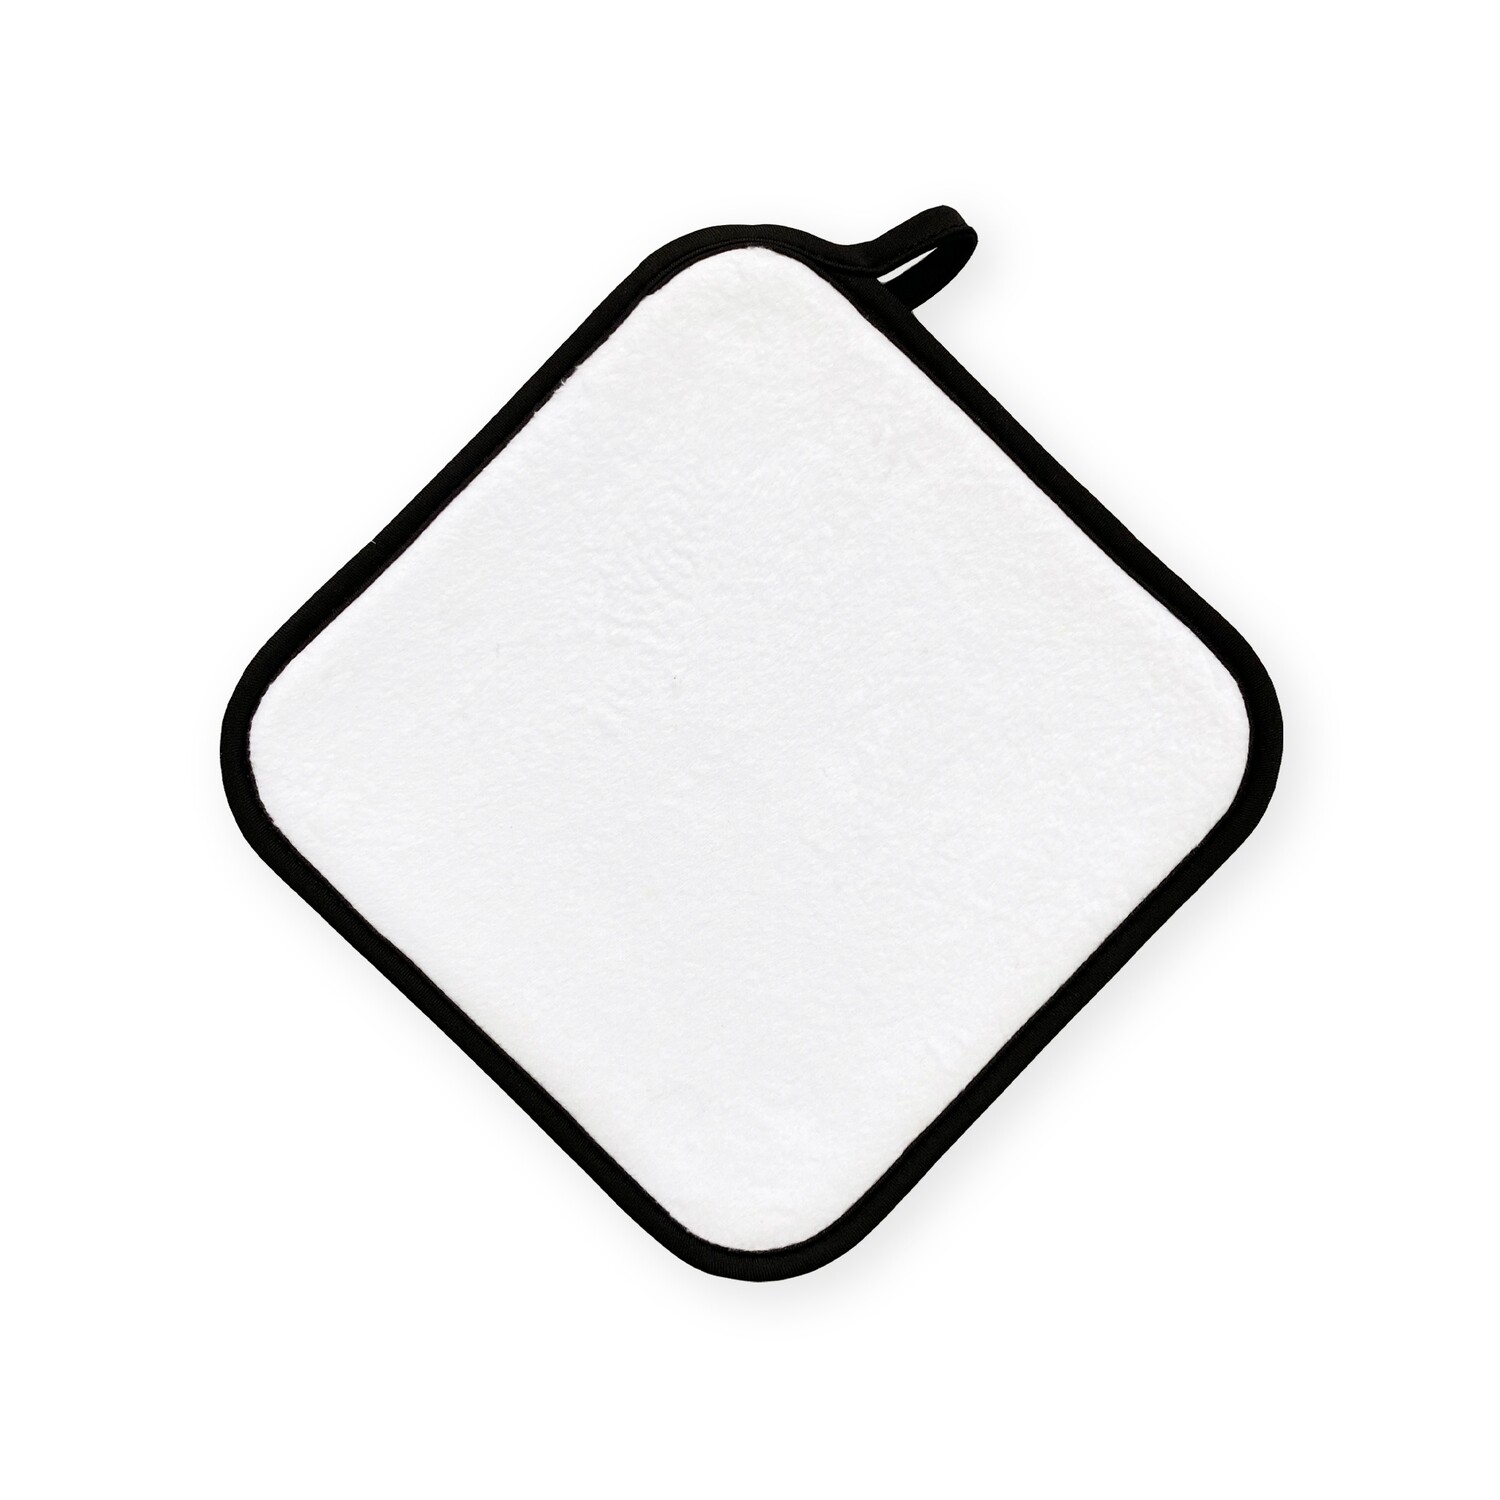 客製 滿版 印花 可吊掛 泡棉 止滑 方形 隔熱墊 Hangable Foam Anti-Slip Square Insulation Pad